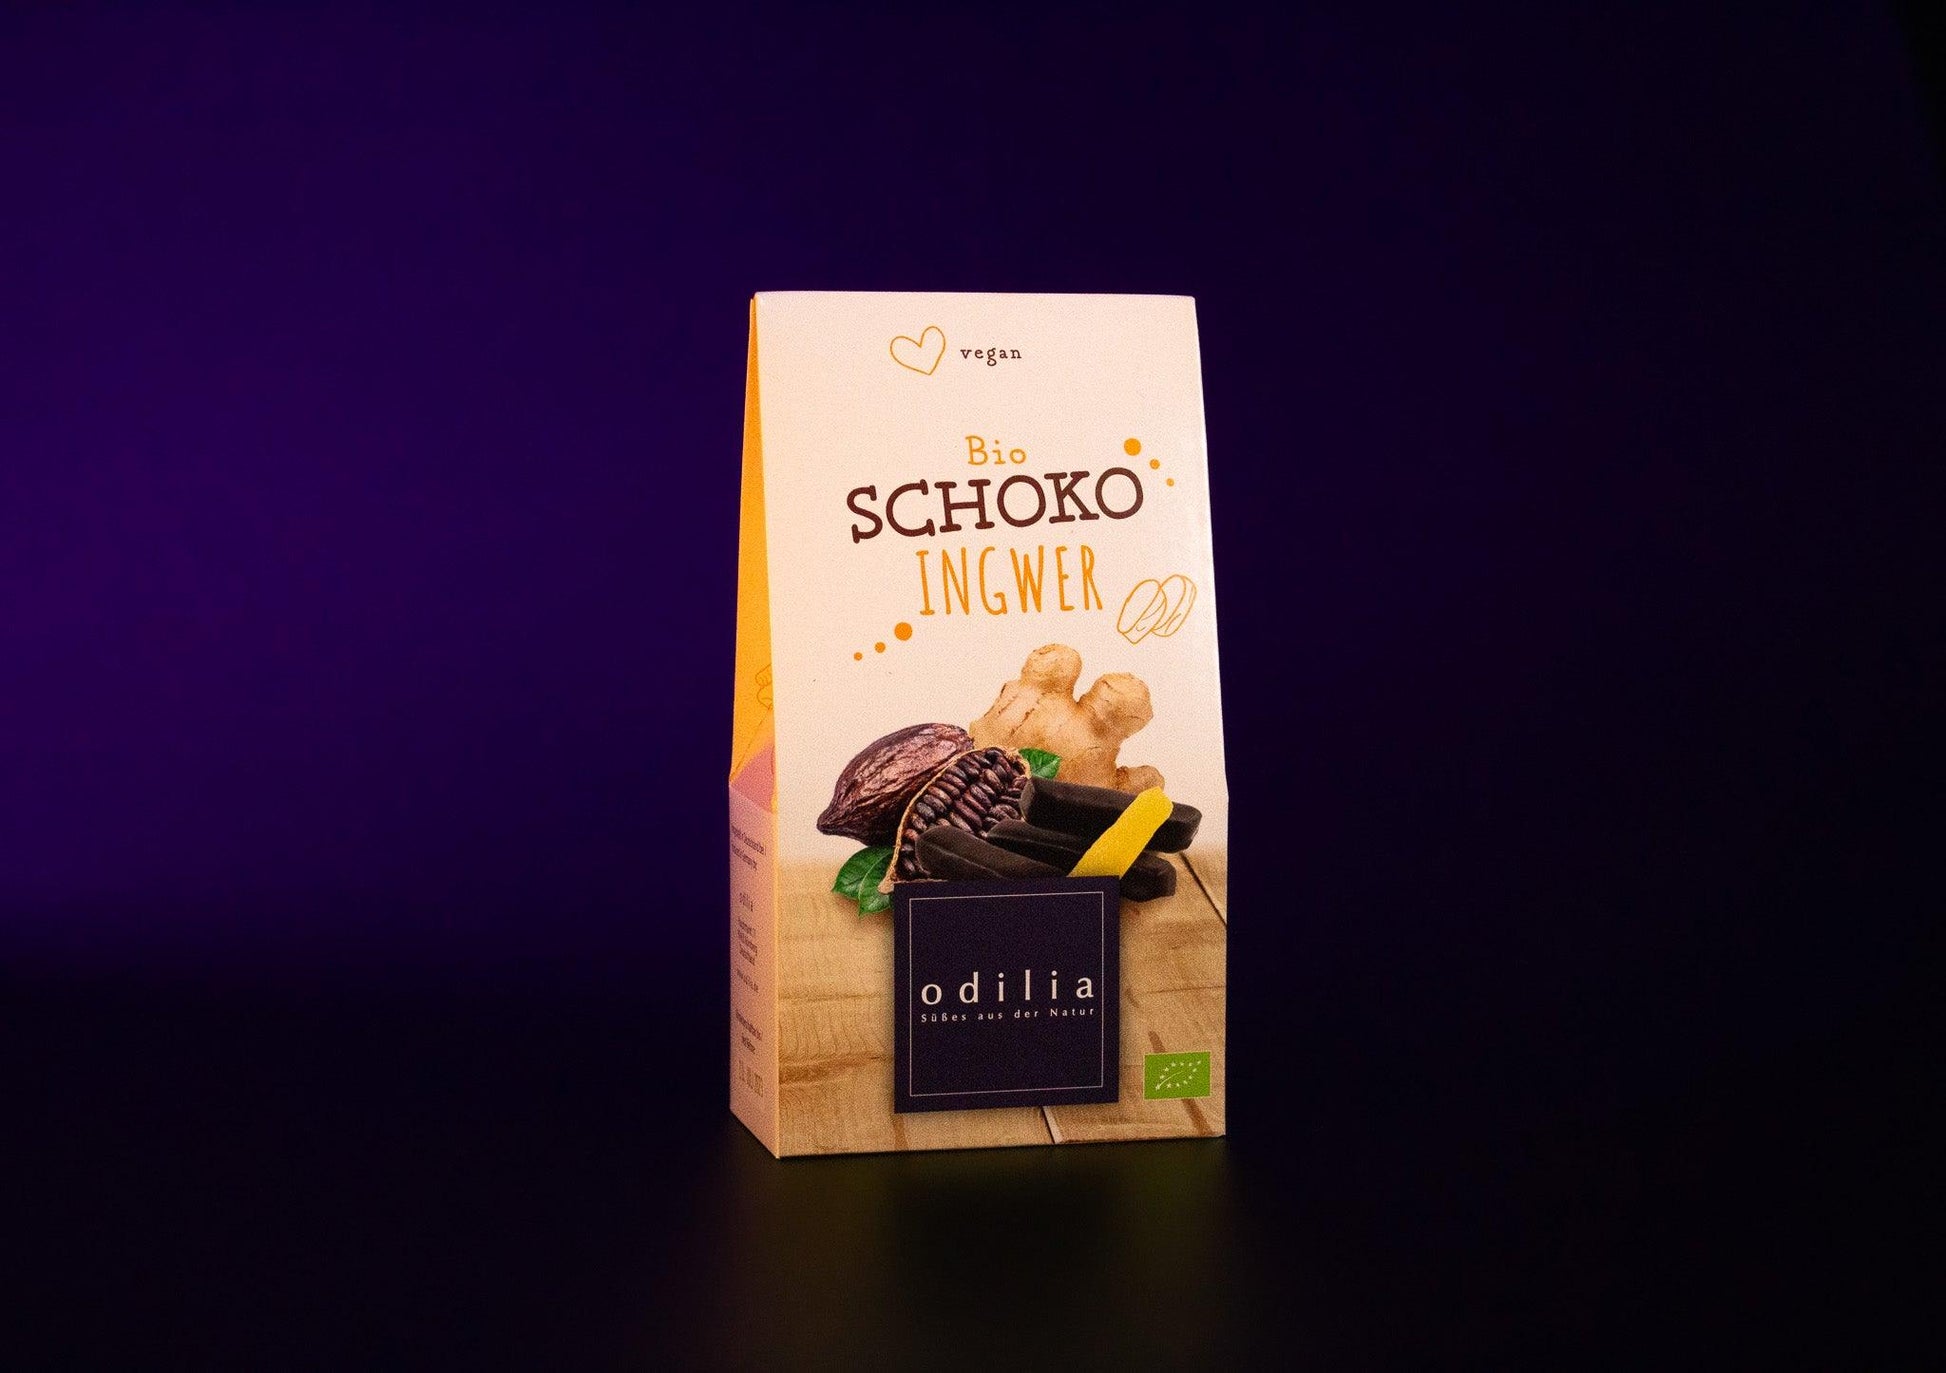 Eine 100g Packung mit knackigen Ingwerwürfeln, die mit einer Hülle aus zartschmelzender Bio-Schokoladeüberzogen sind - eine aromatische und leicht schärfliche Nascherei.